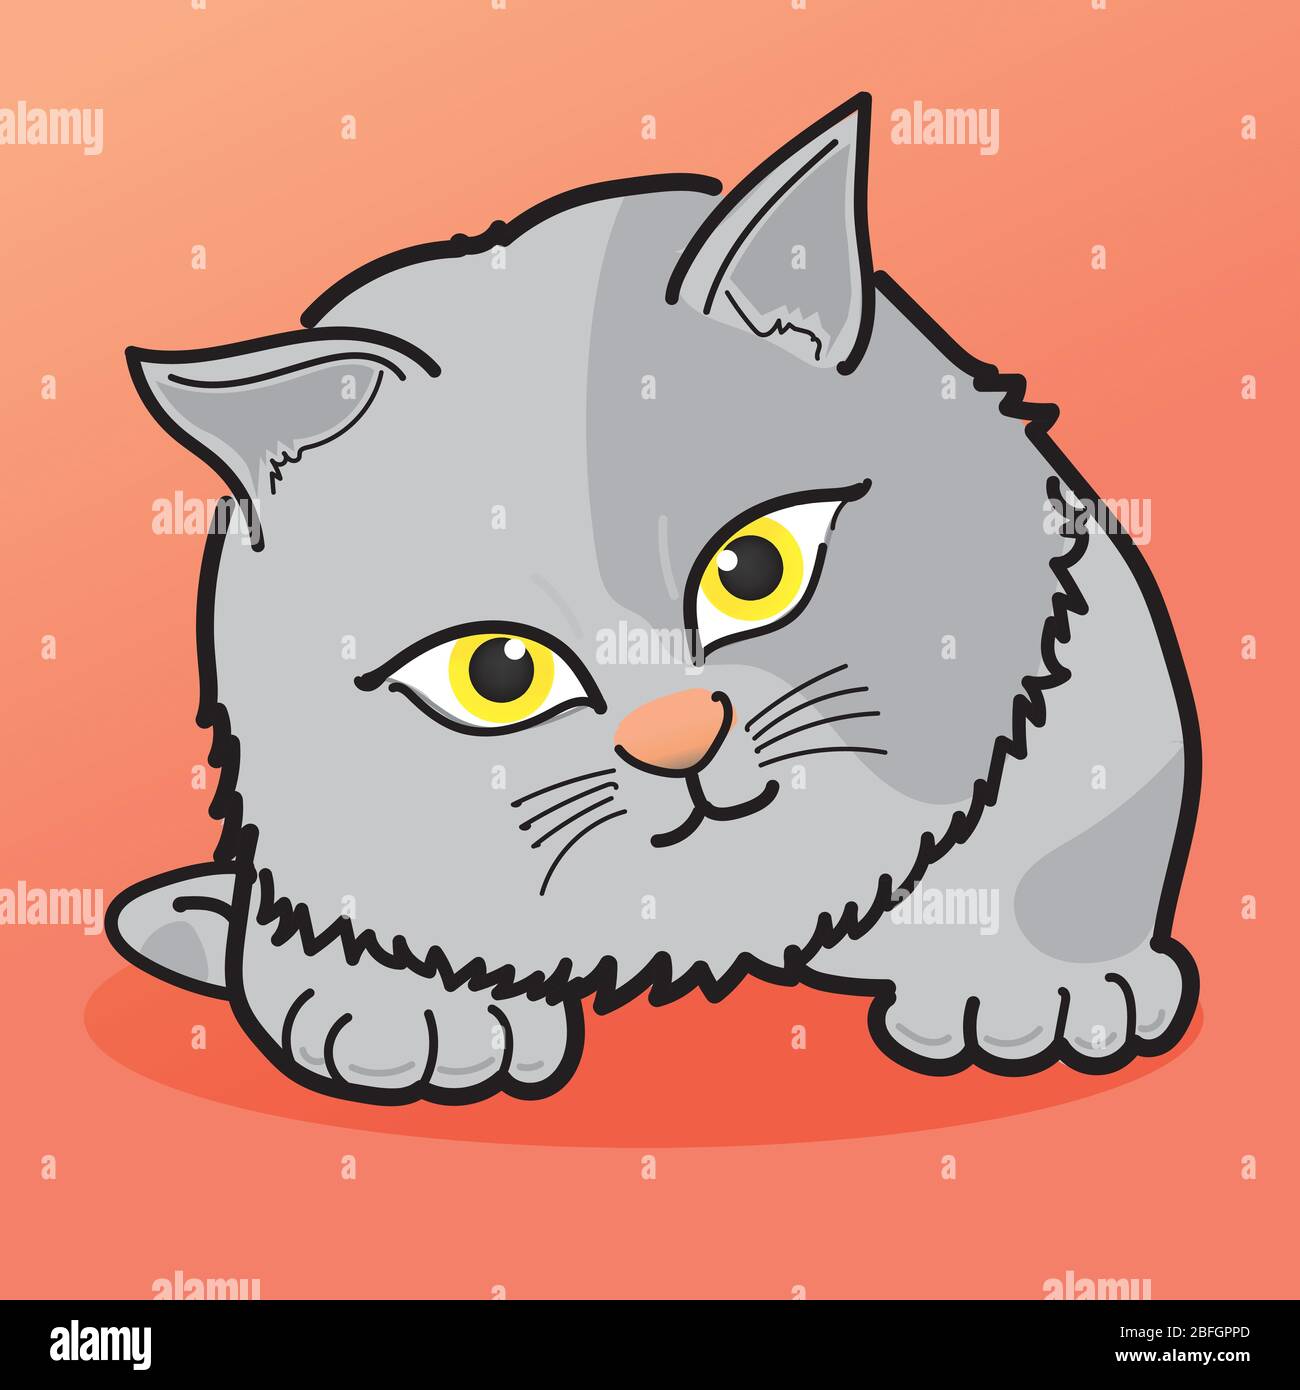 Cat Illustration Clipart. Il gatto grigio ha una marcatura scura sul suo corpo. Ha occhi gialli. È su uno sfondo arancione. Disegno a mano art. Illustrazione Vettoriale